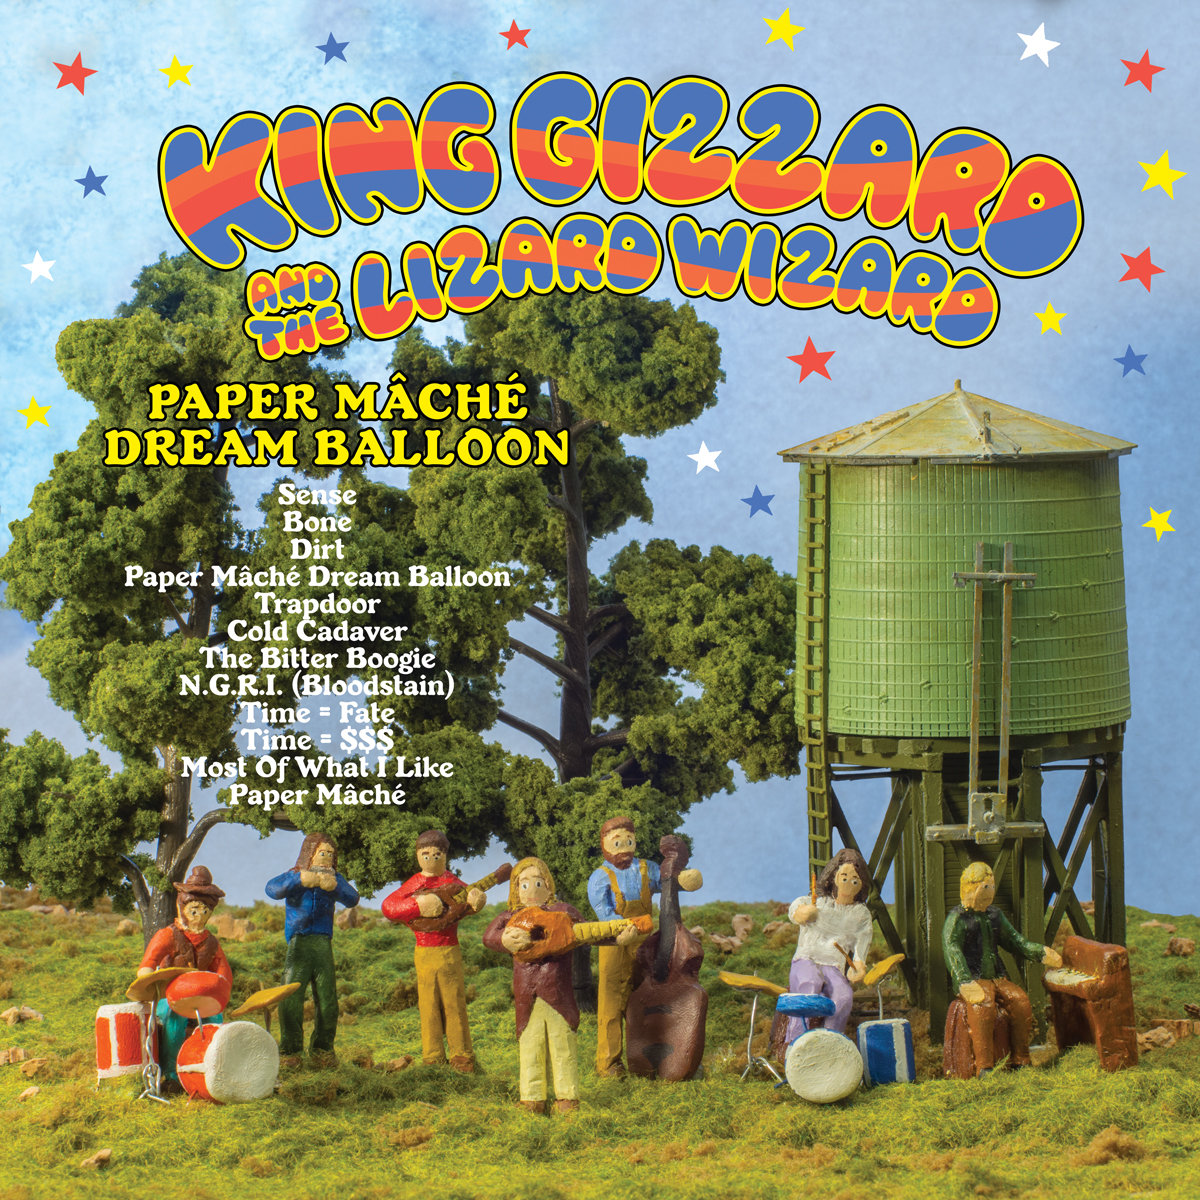 King Gizzard & The Lizard Wizard - Paper Mâché Dream Balloon (2015)